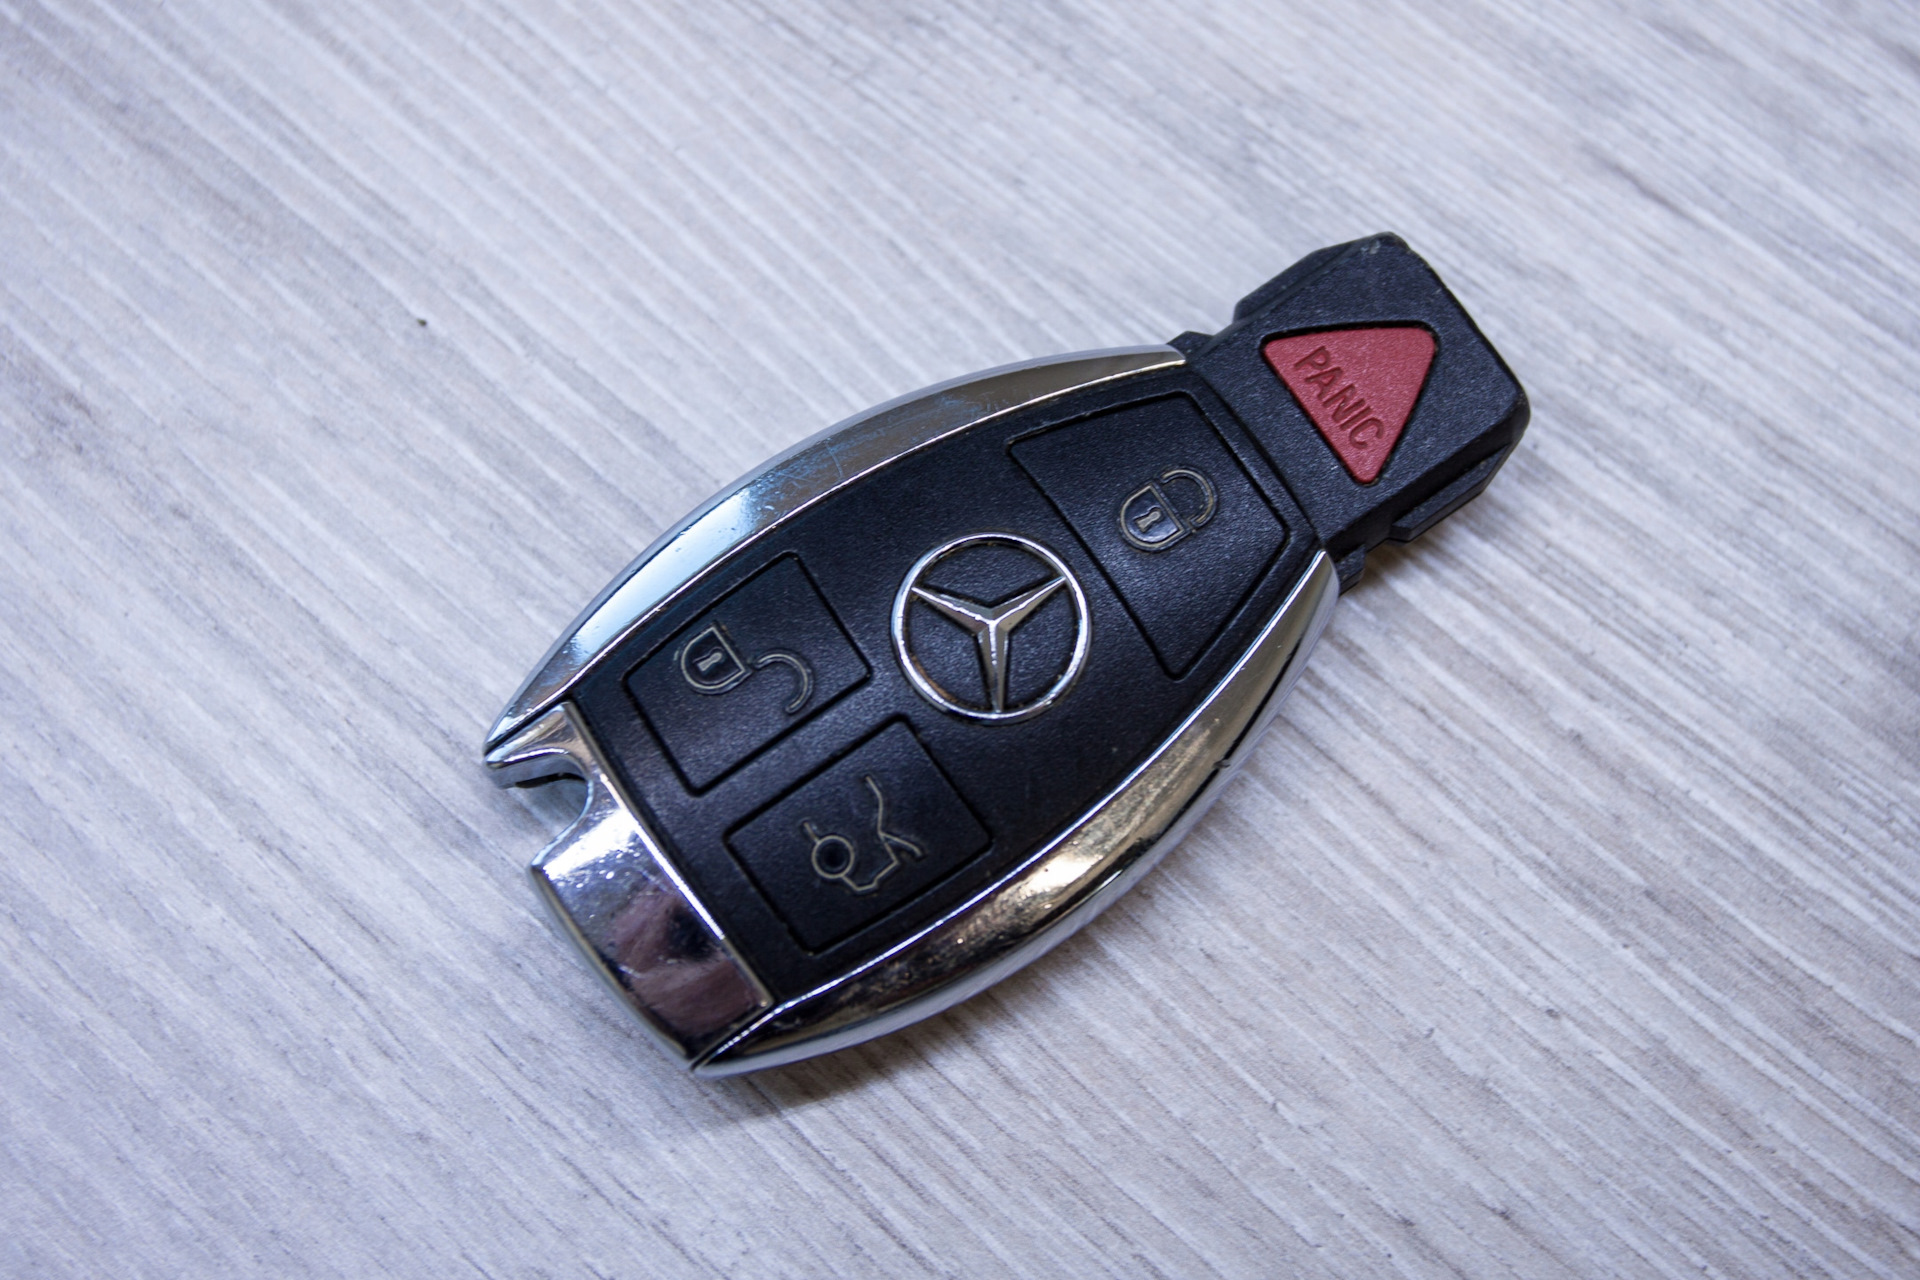 Ключи от Mercedes Benz w211. Ключ w204. Ключ Мерседес 190. Ключ Мерседес 211.